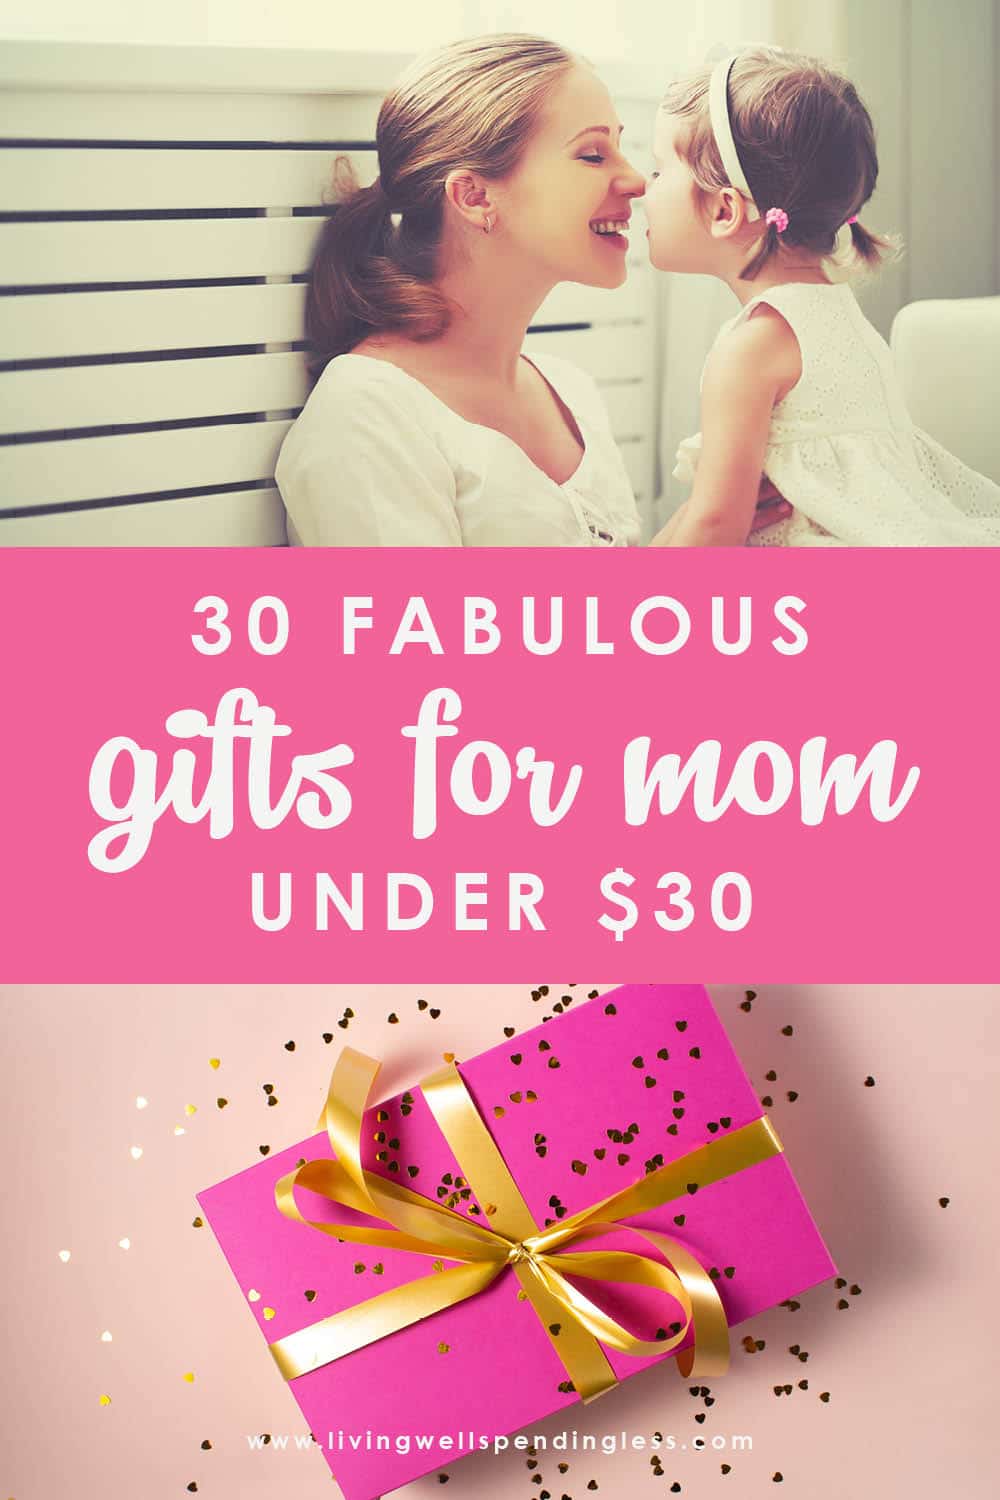 https://www.livingwellspendingless.com/wp-content/uploads/2020/04/30-Fabulous-Gifts-for-Mom-under-30_Vertical_1000x1500.jpg